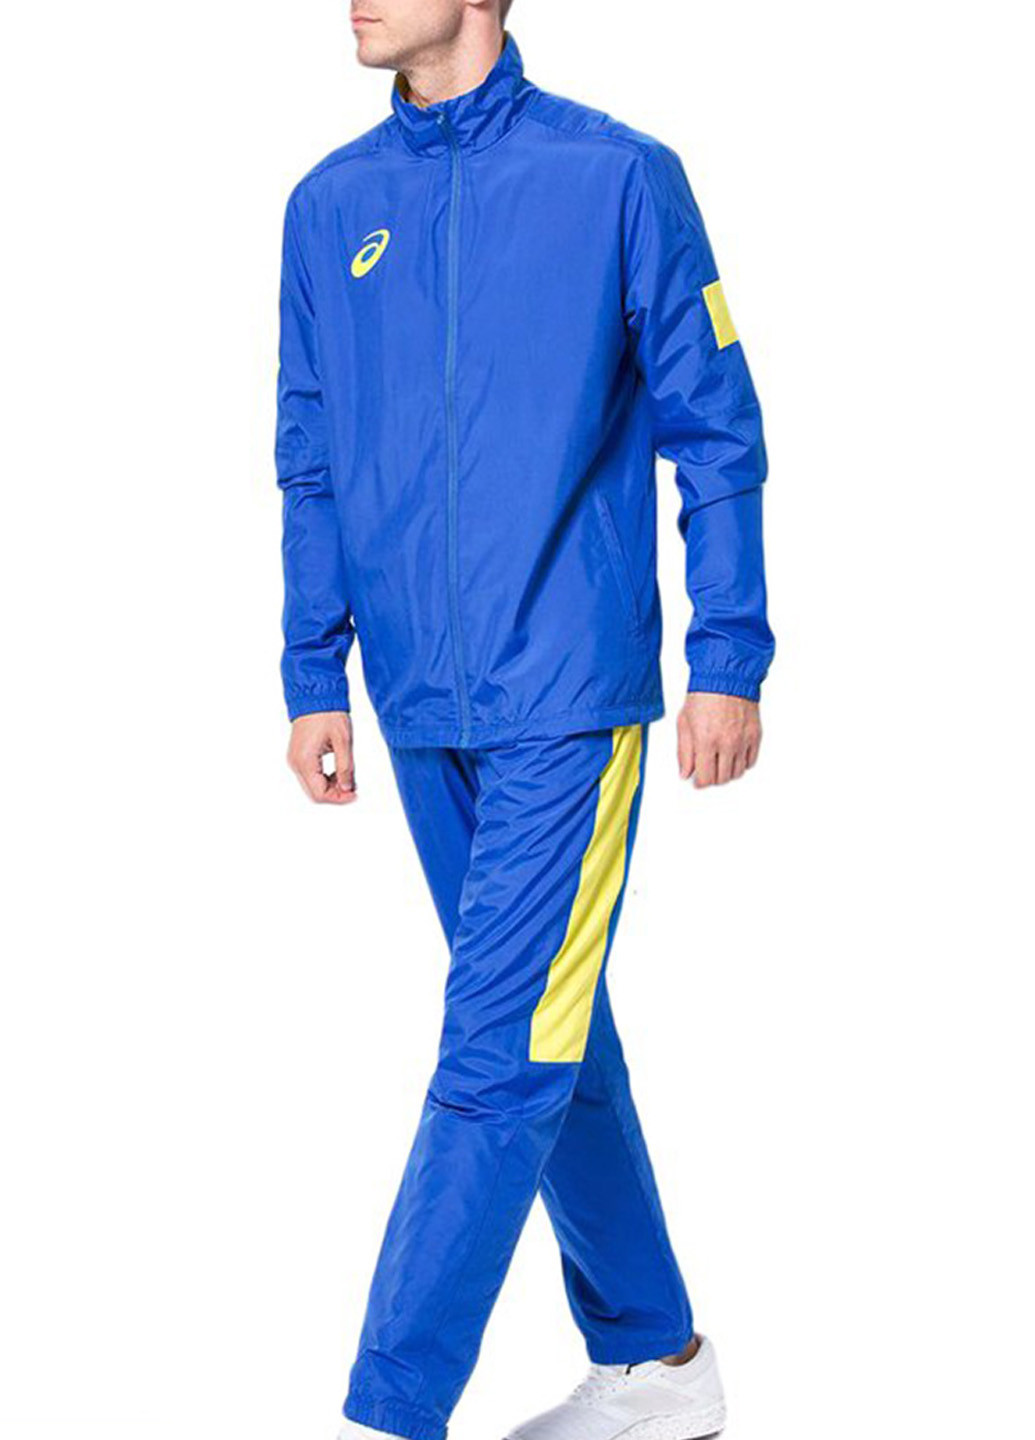 Сине-желтый демисезонный костюм (олимпийка, брюки) брючный Asics MAN LINED SUIT